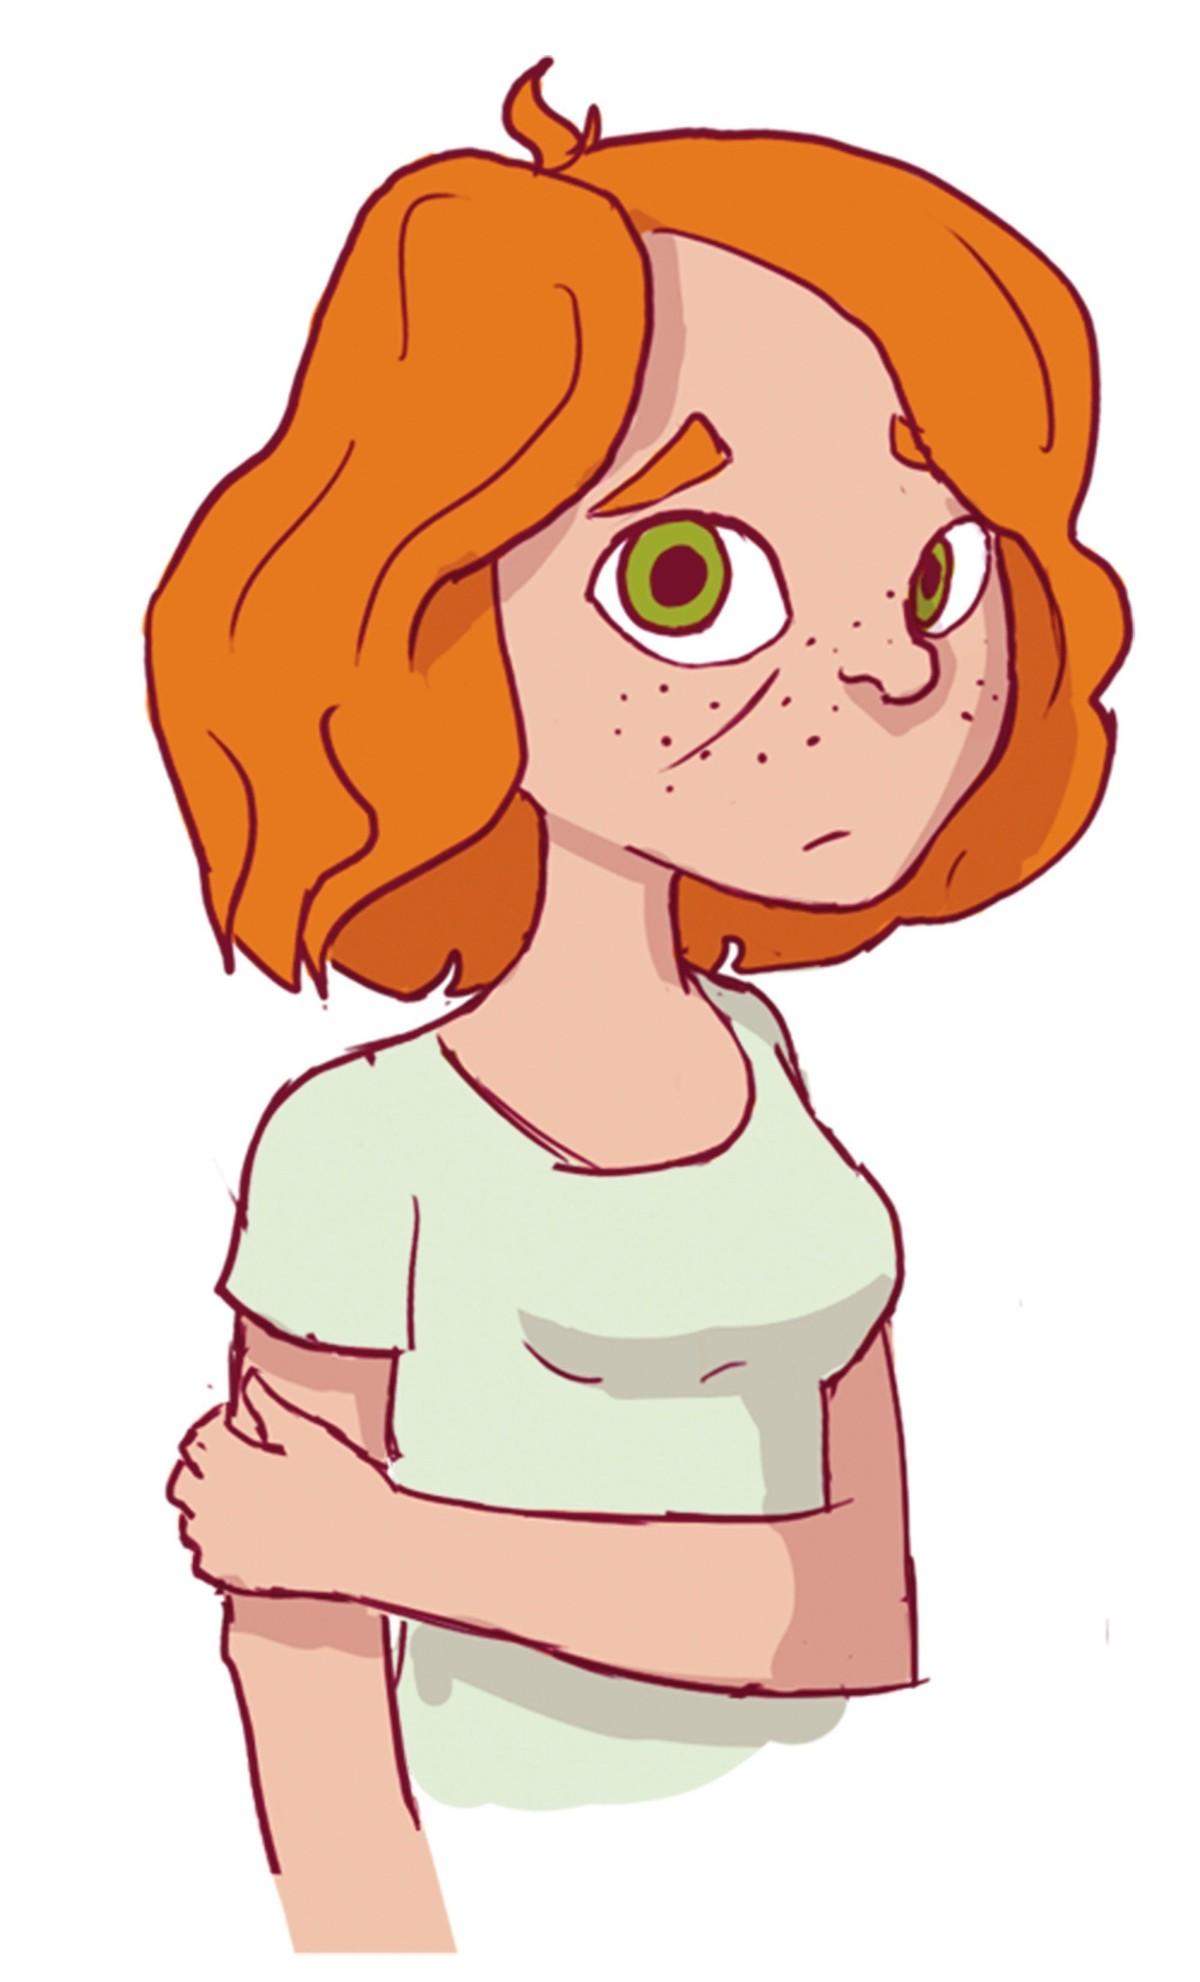 A nervous ginger girl